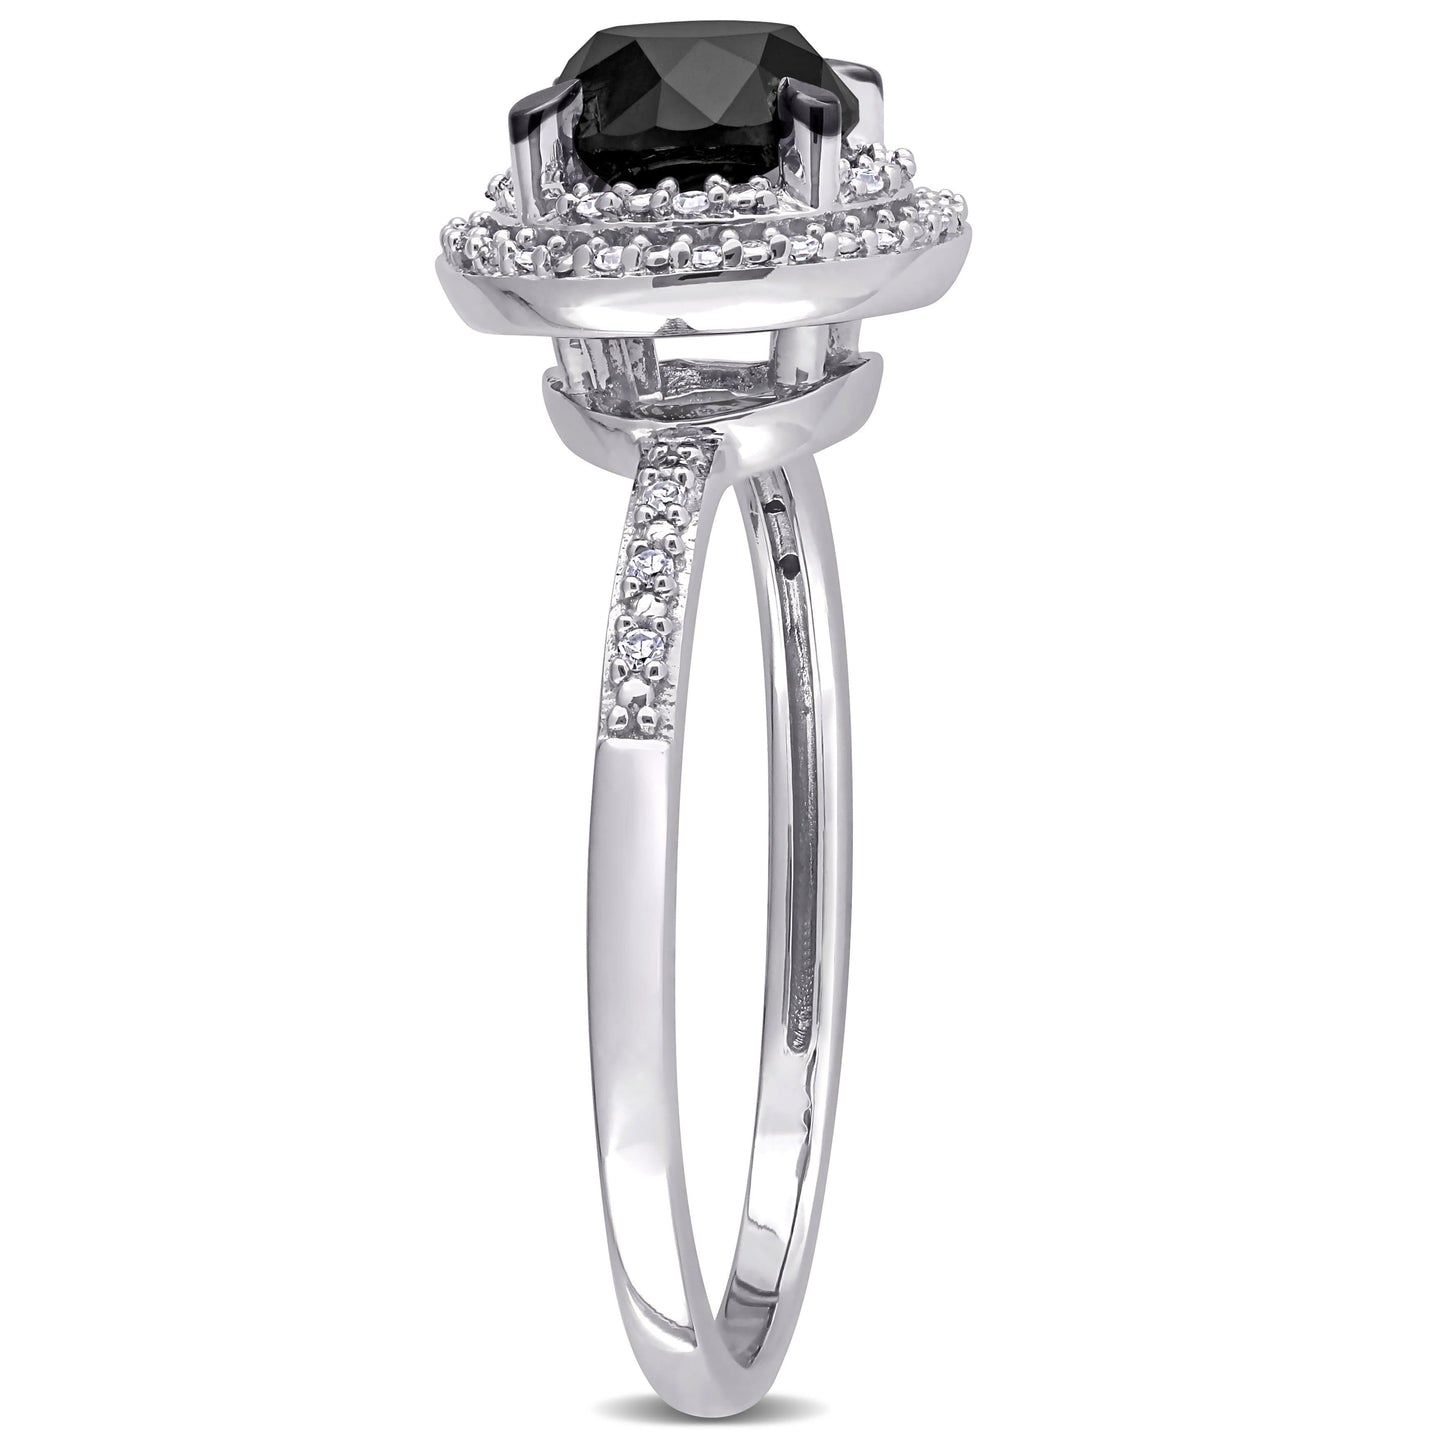 Julie Leah Black & White Diamond Ring in 14k White Gold